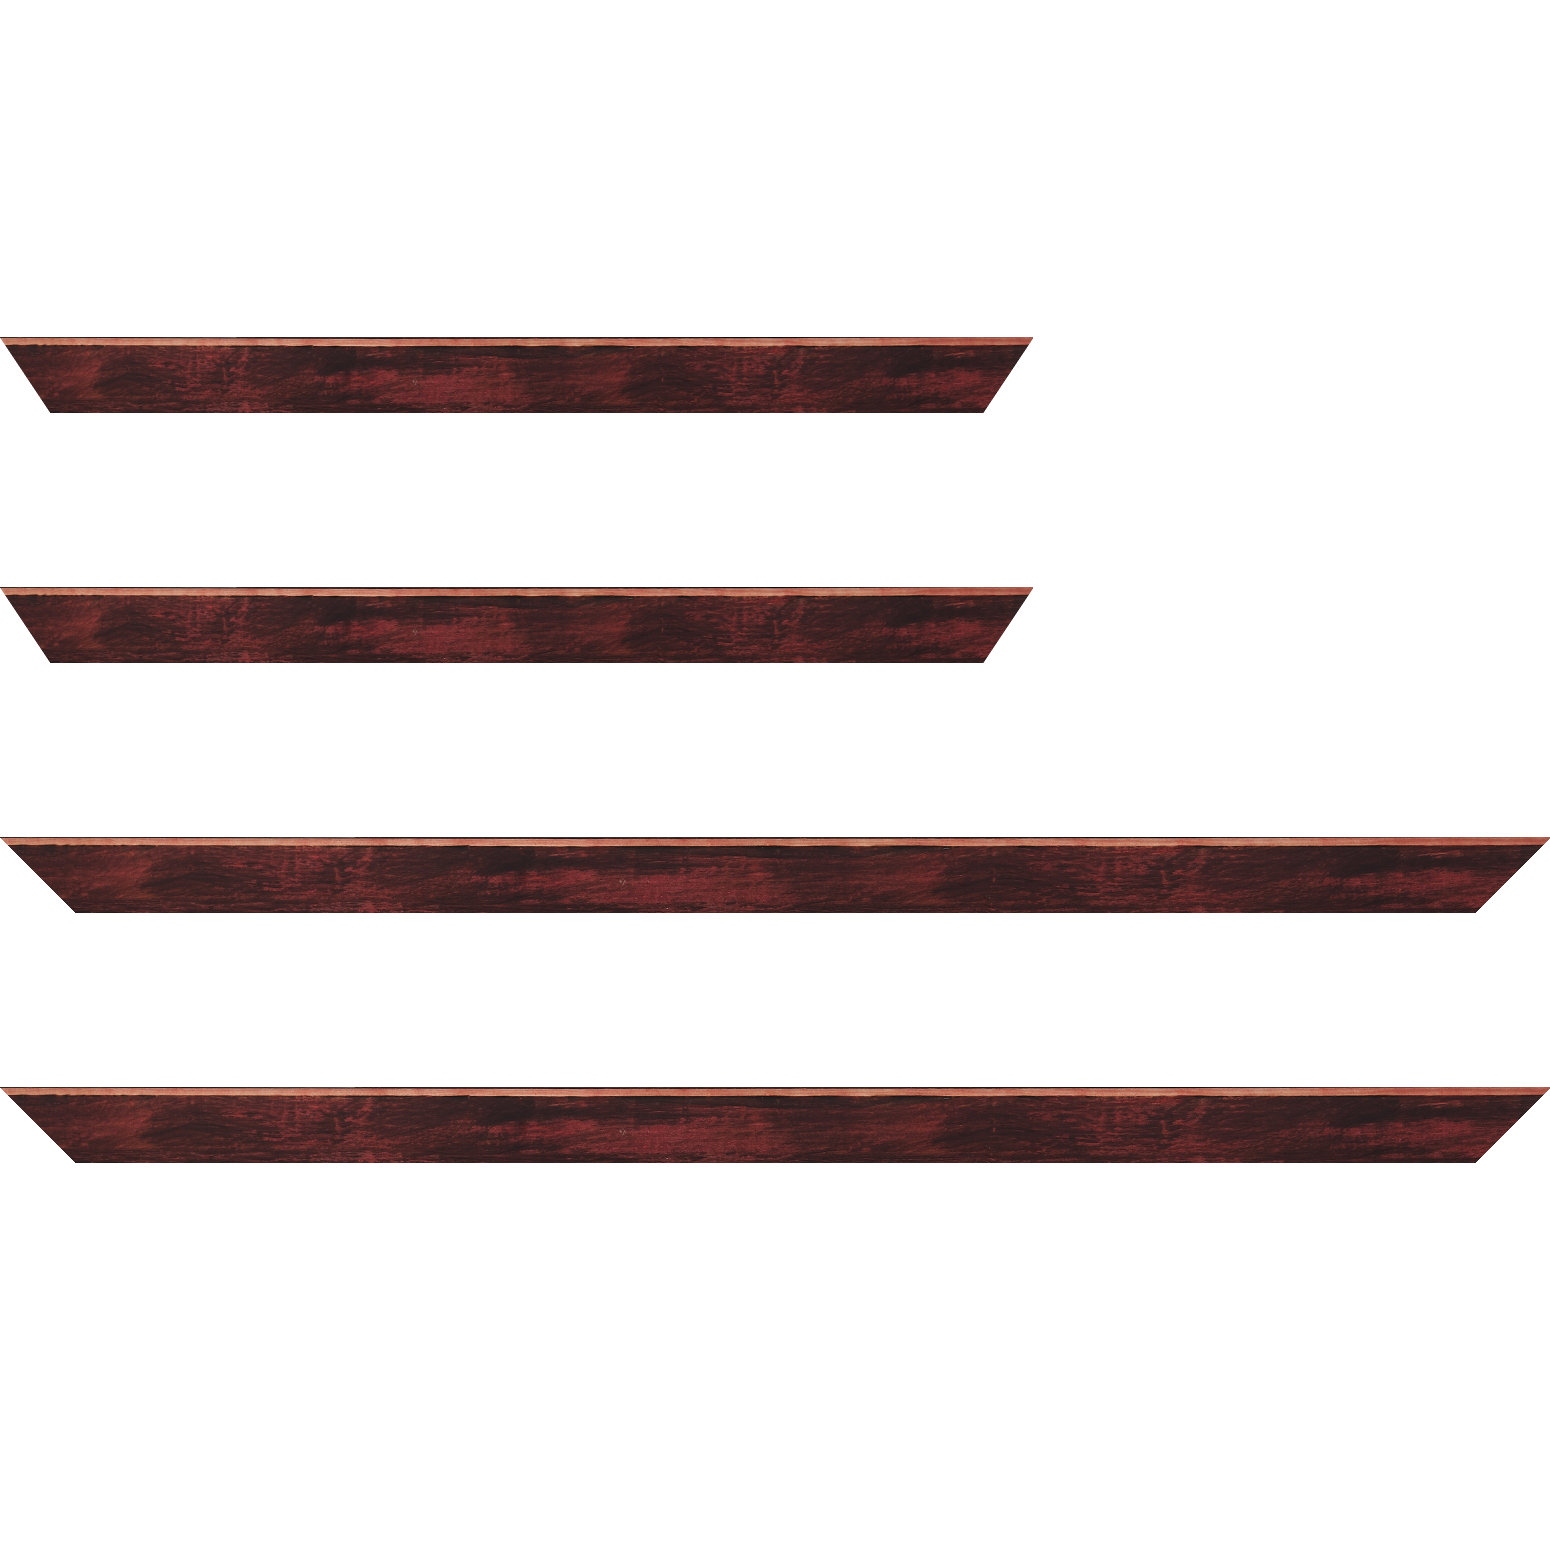 Baguette bois profil arrondi en pente plongeant largeur 2.4cm couleur bordeaux effet ressuyé, angle du cadre extérieur filet naturel - 70x100